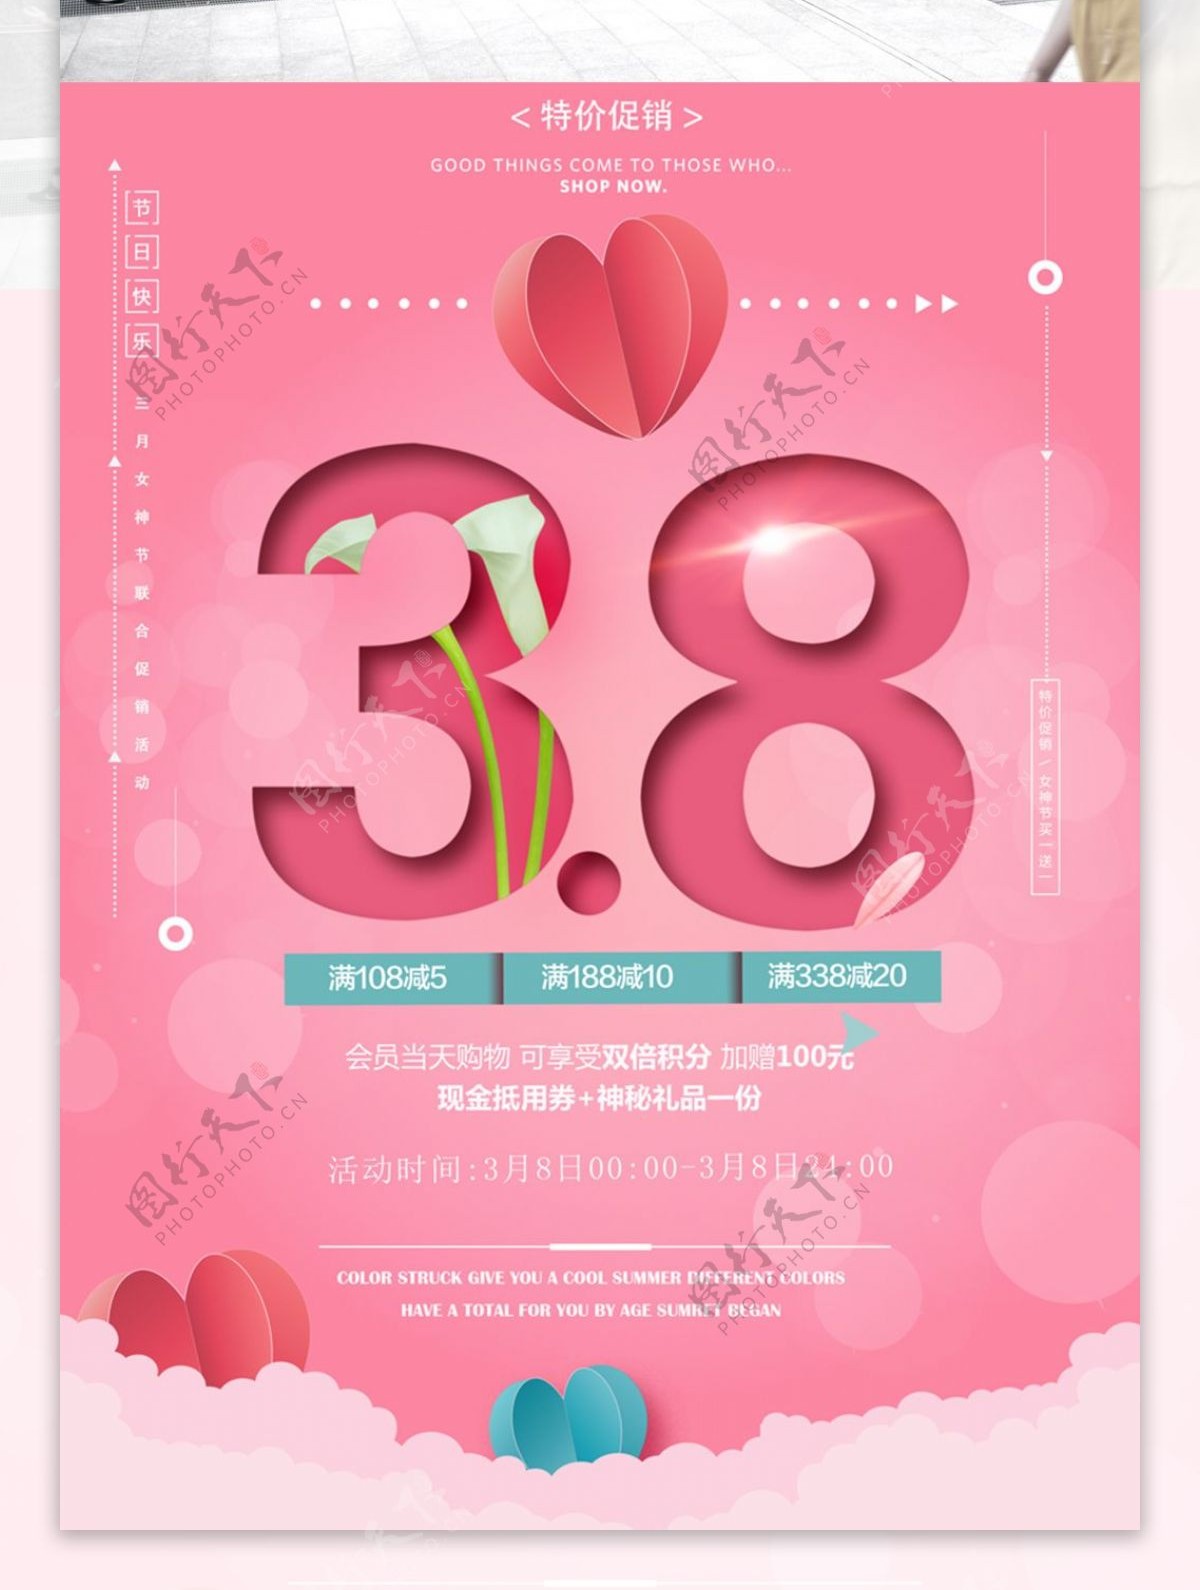 38女生节节日促销简约粉红色海报